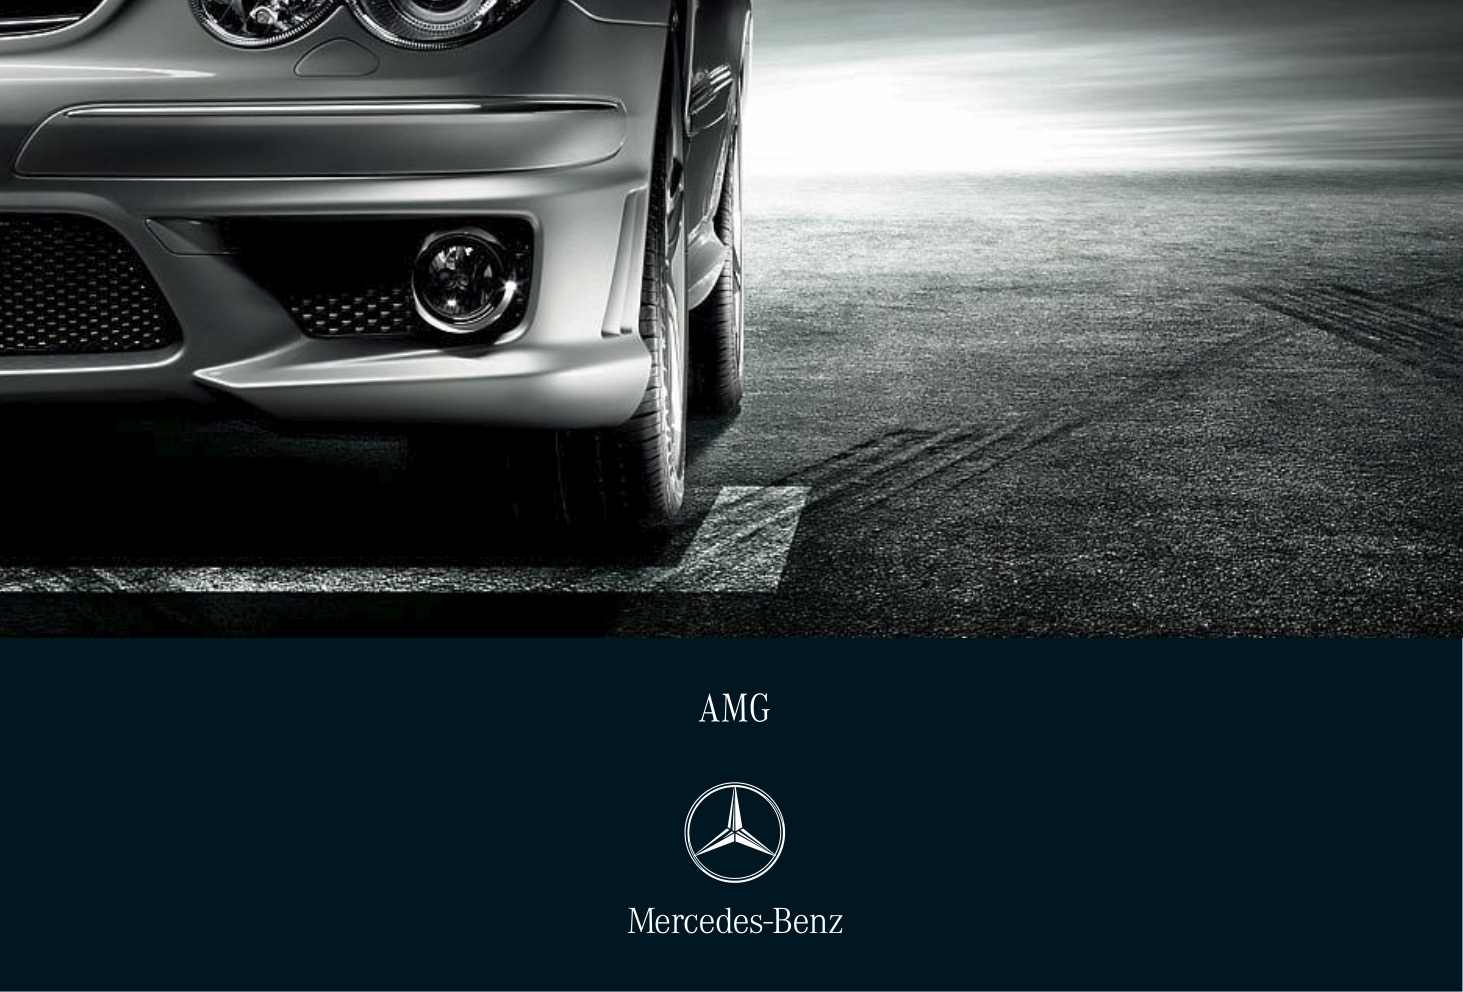 2007 Mercedes-Benz AMG Brochure